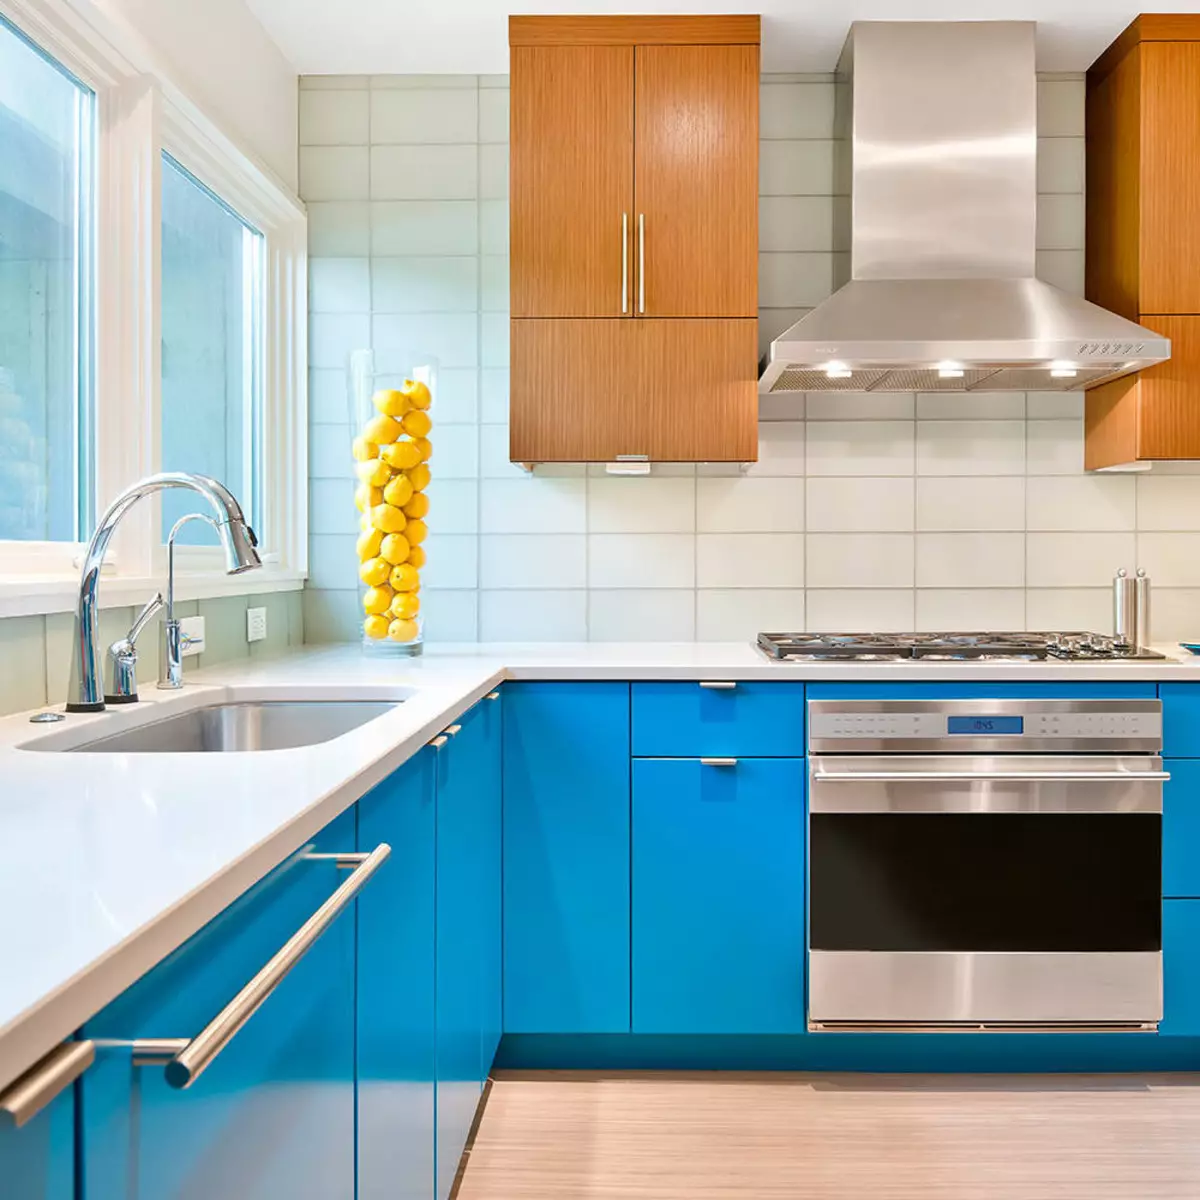 ホワイトブルーキッチン（64写真）：キッチンインテリアデザイン、様々な色の壁のアクセントのための白青い色のキッチンヘッドセットの特徴 9393_22